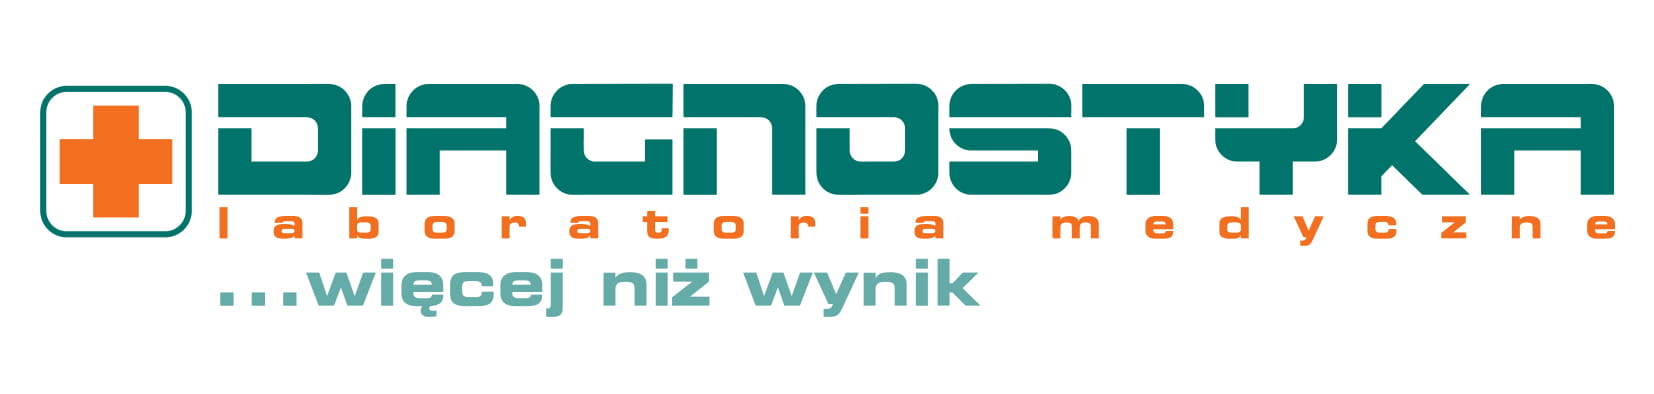 Logo Diagnostyka